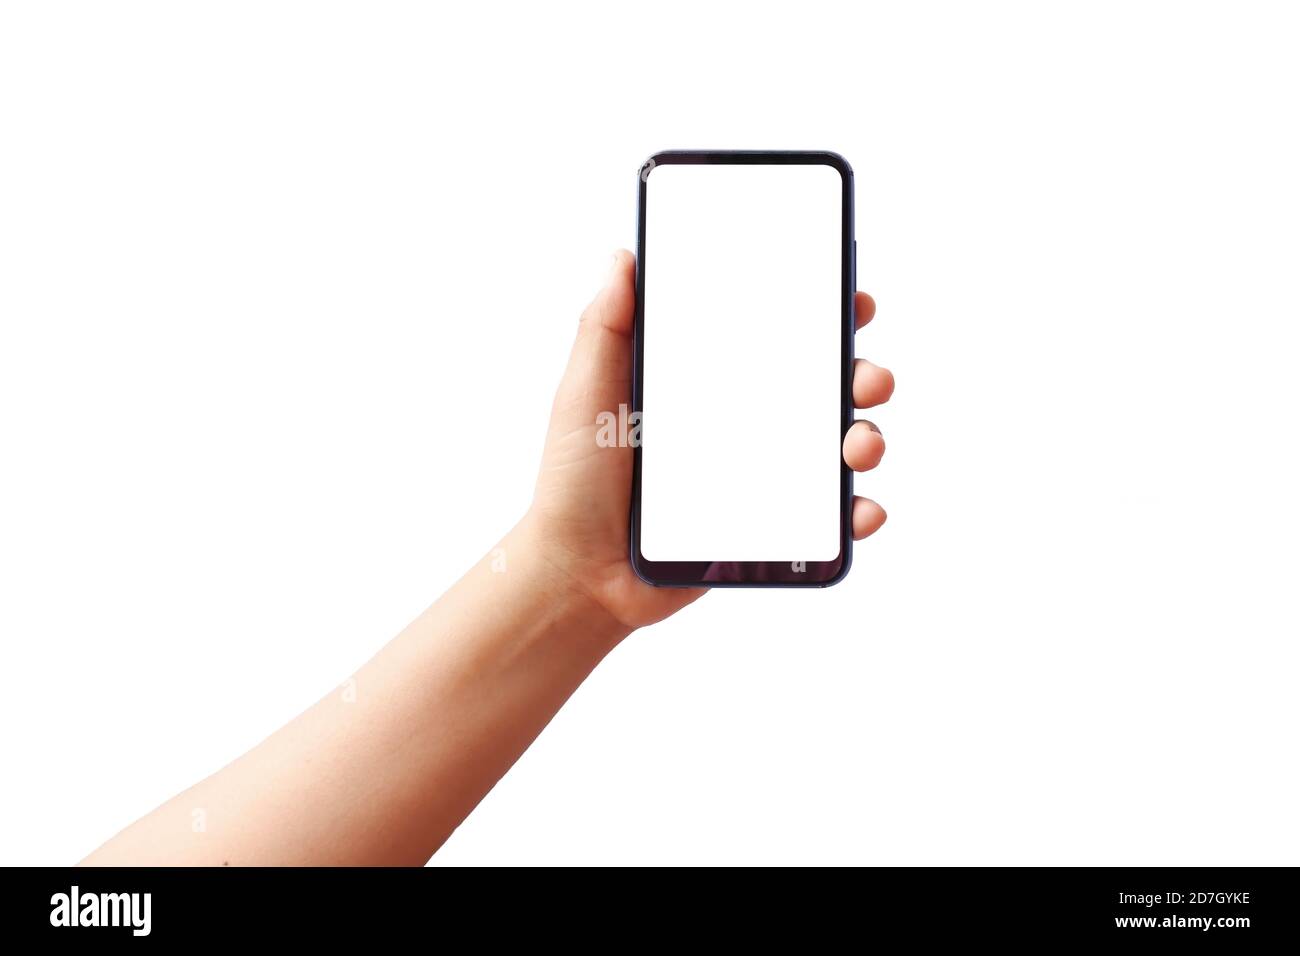 La main tient l'écran blanc, le téléphone portable est isolé sur un fond blanc avec le chemin de coupure. Concept de communication. Banque D'Images